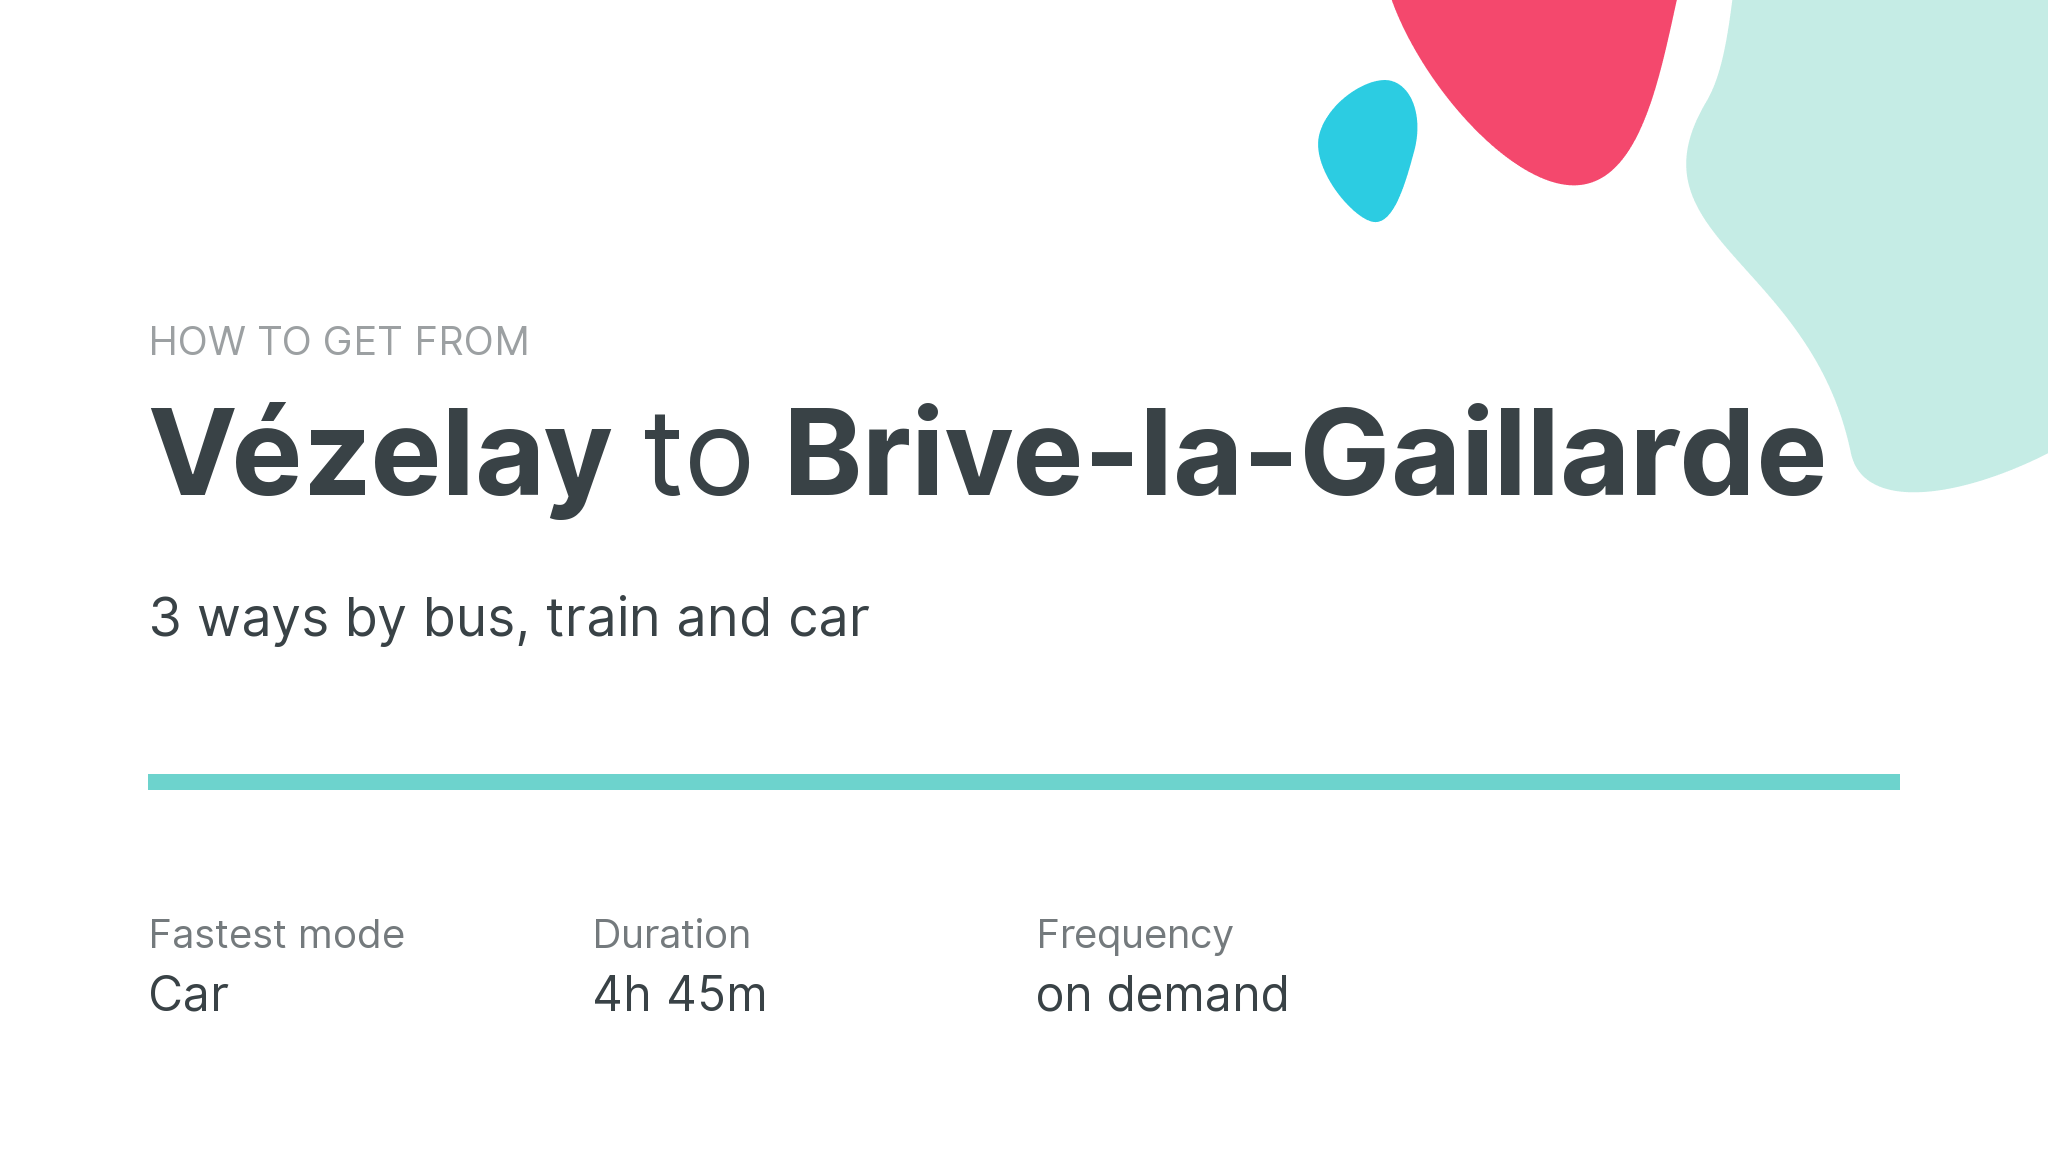 How do I get from Vézelay to Brive-la-Gaillarde